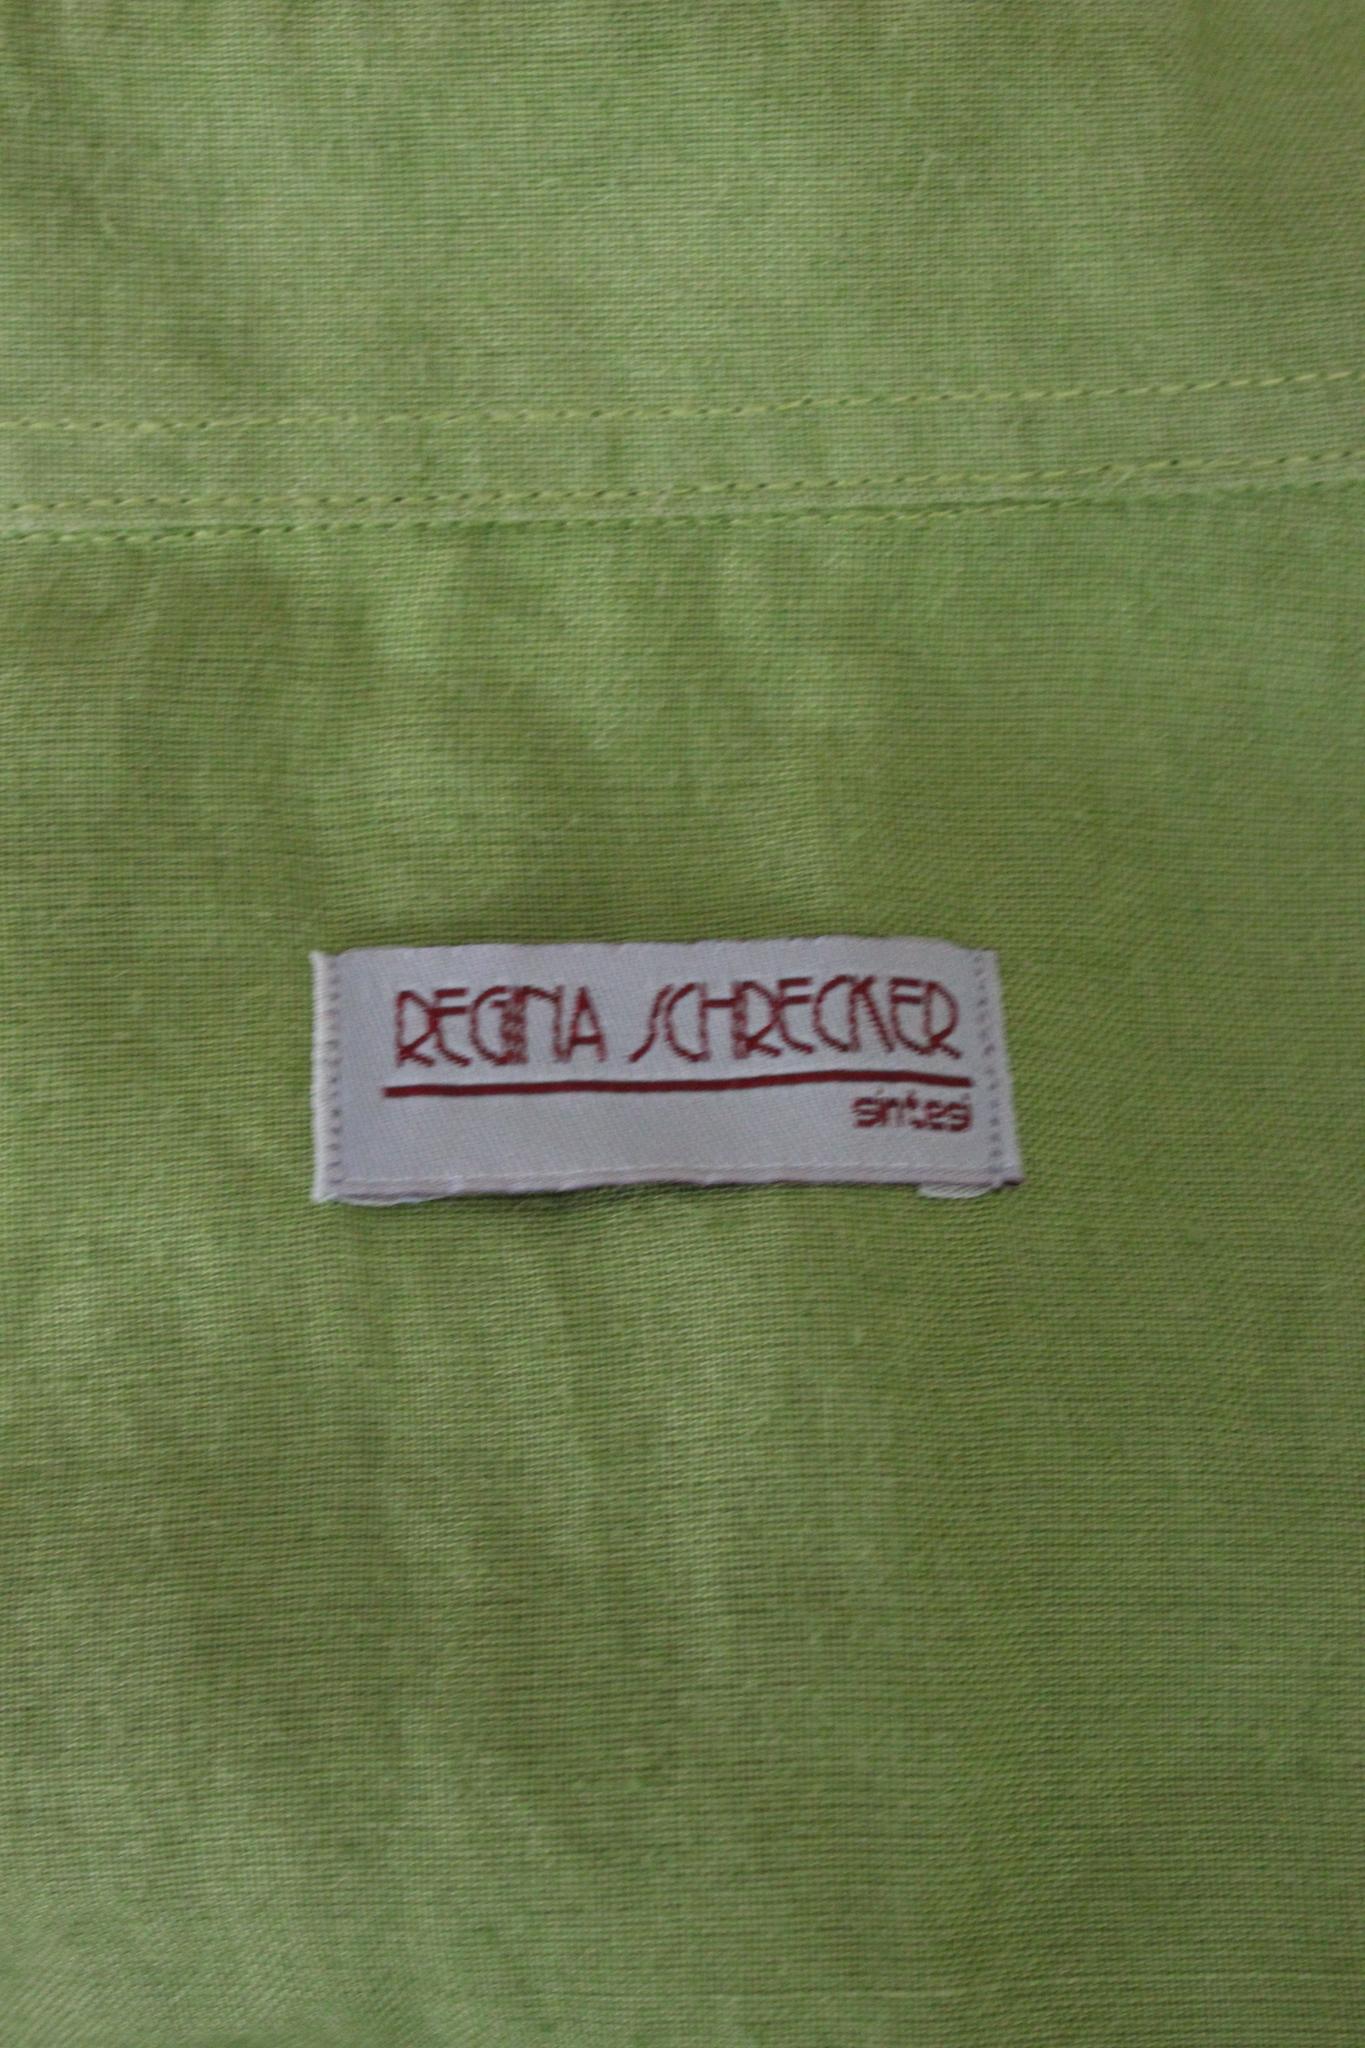 Dieses grüne Vintage-Hemd von Regina Schrecker ist eine tolle Ergänzung für jede Garderobe. Aus 100 % seidenähnlich gewebtem Ramie gefertigt, bietet es ein weiches und doch strukturiertes Gefühl. Der zeitlose grüne Farbton und das Vintage-Design